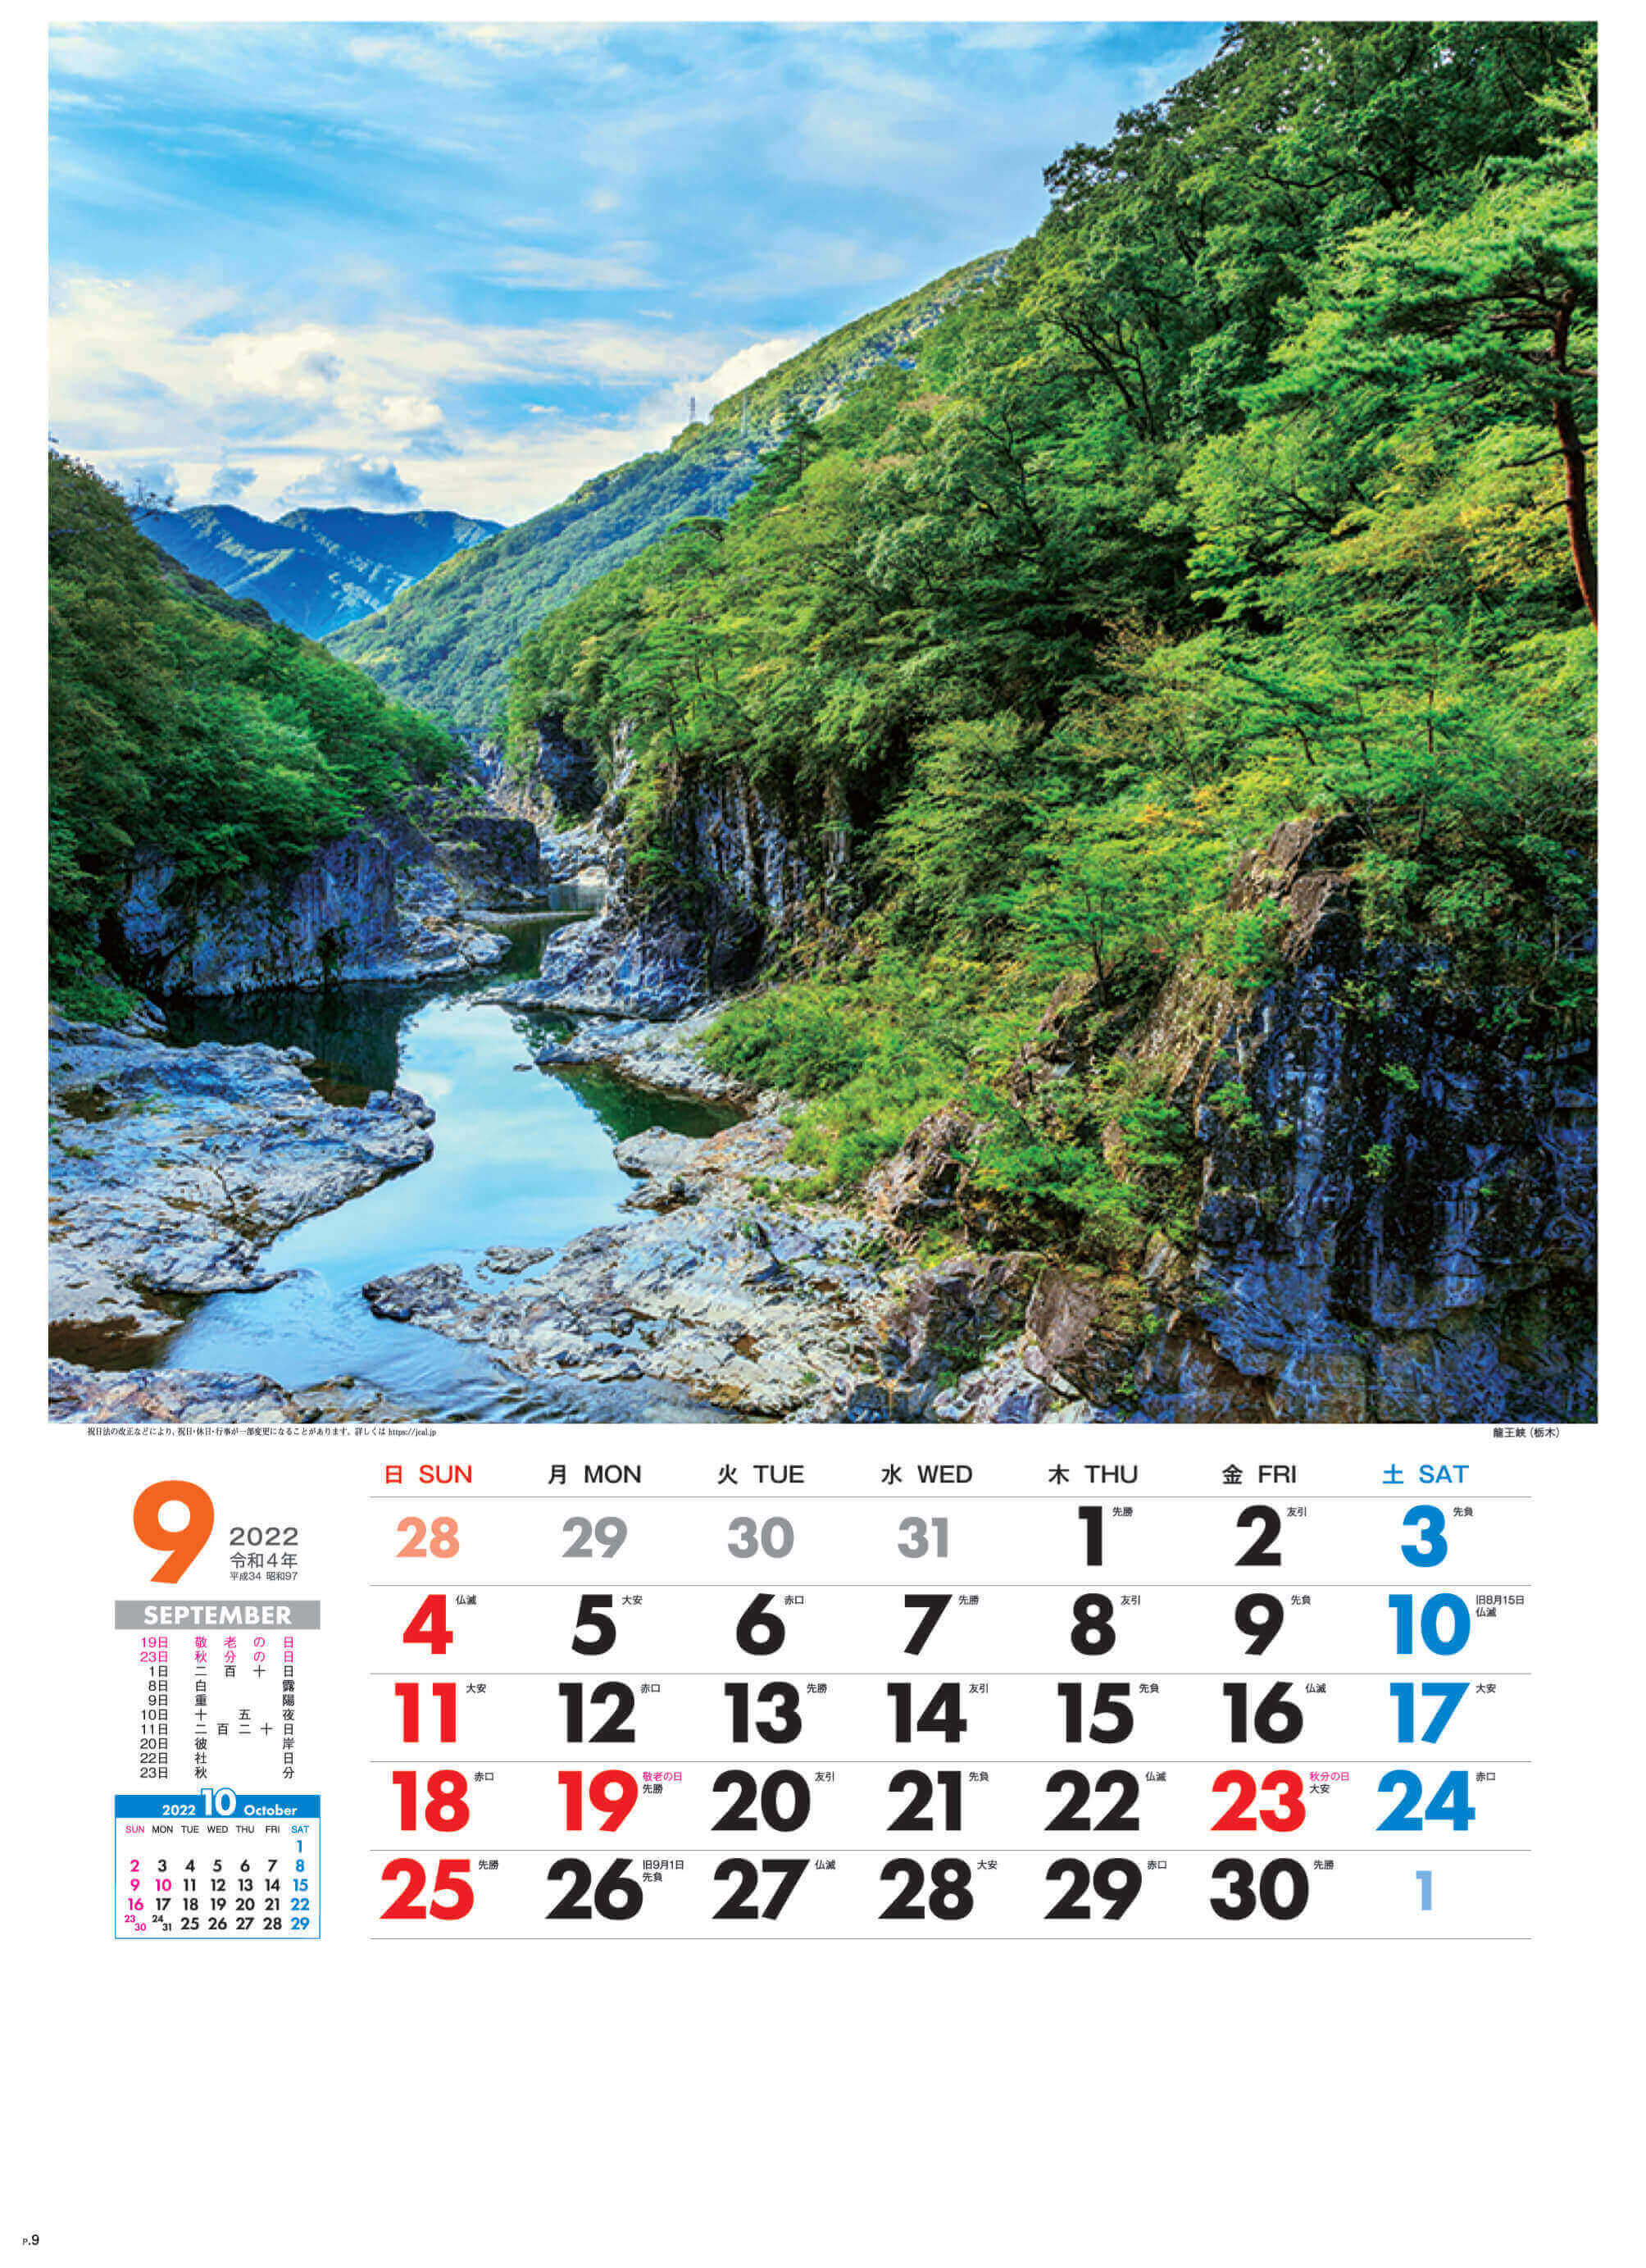 9月 龍王峡(栃木) 美しき日本 2022年カレンダーの画像